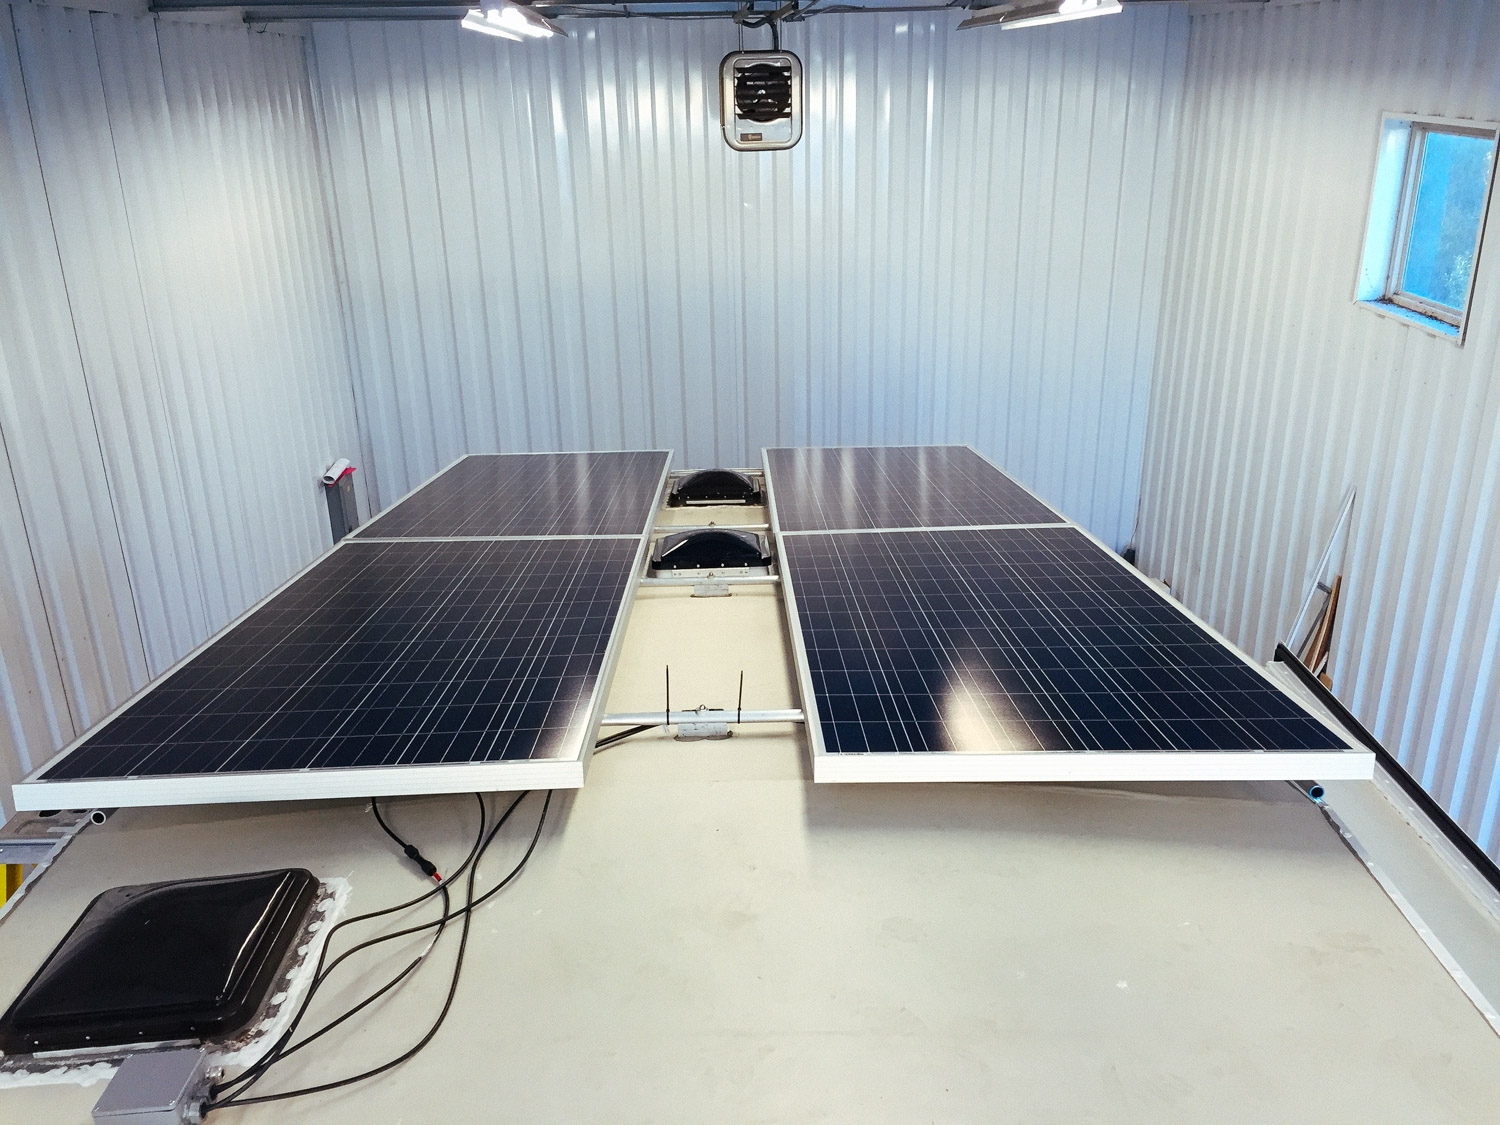  Four 305 watt solar panels installed on the rack. 